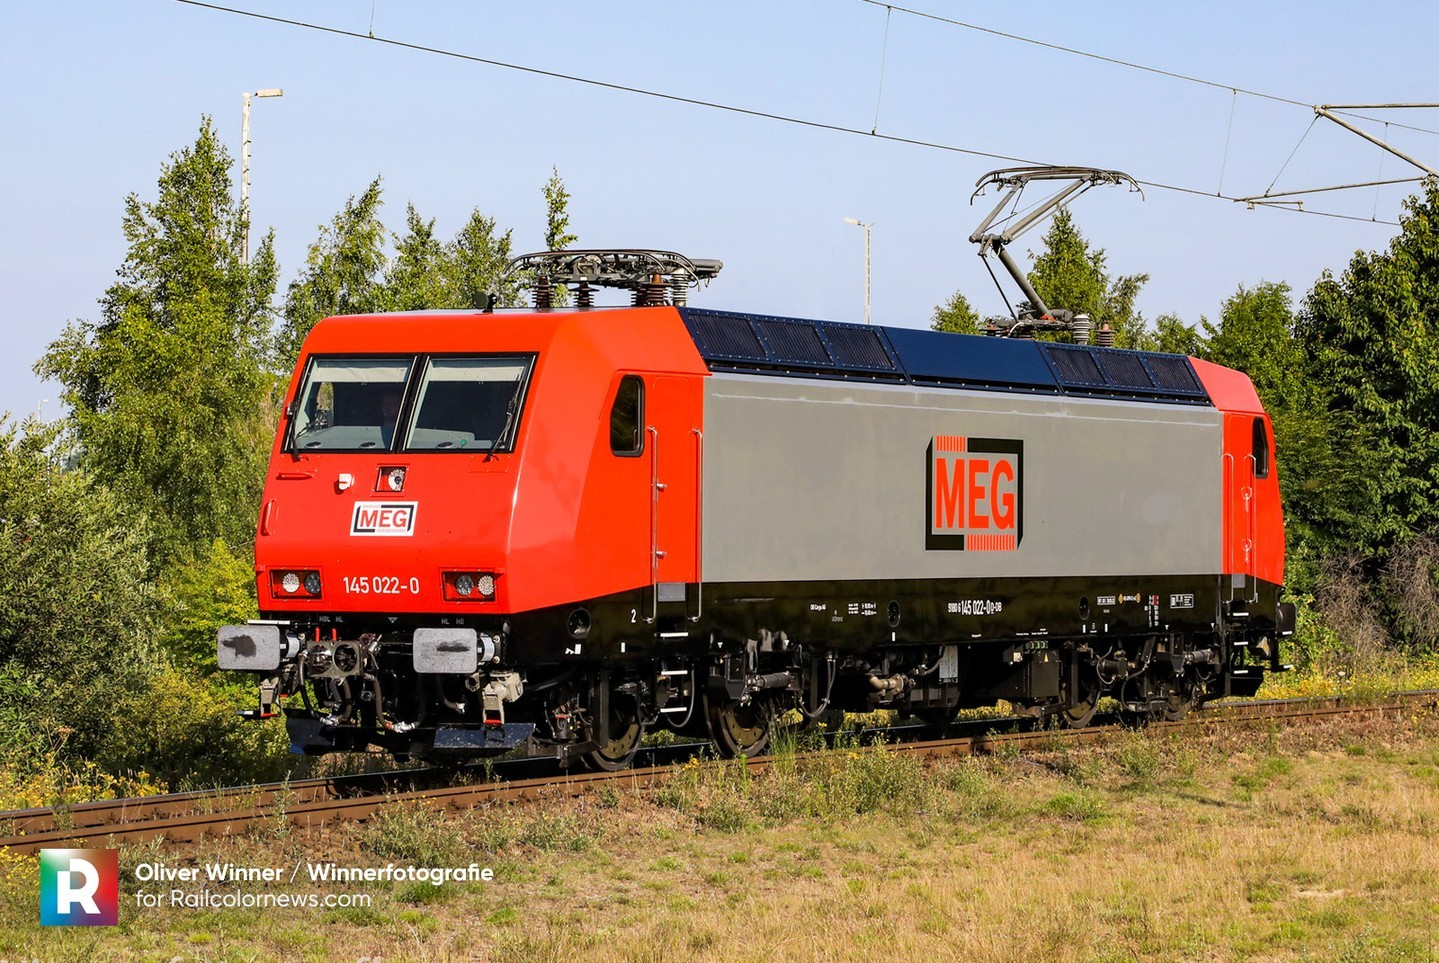 📷 by Oliver Winner / @Winnerfotografie 🇩🇪 DB Cargo 145 fleet update – all MEG designs ⬆️ Find more pictures and overview on RailcolorNews.com
.
.
.
.
.
#DBCargo #Alstom #AlstomTRAXX #DeutscheBahnCargo #BR145 #TraxxAC #DBC #MEG #railways #railcolornews #eisenbahnfotografie #eisenbahn #züge #BR145 #trains #bahn #bahnfotografie #railroads #rails #baureihe145 #bahnbilder #trainspotting #railfanning #ellok #electriclocomotive #145022 #MitteldeutscheEisenbahn